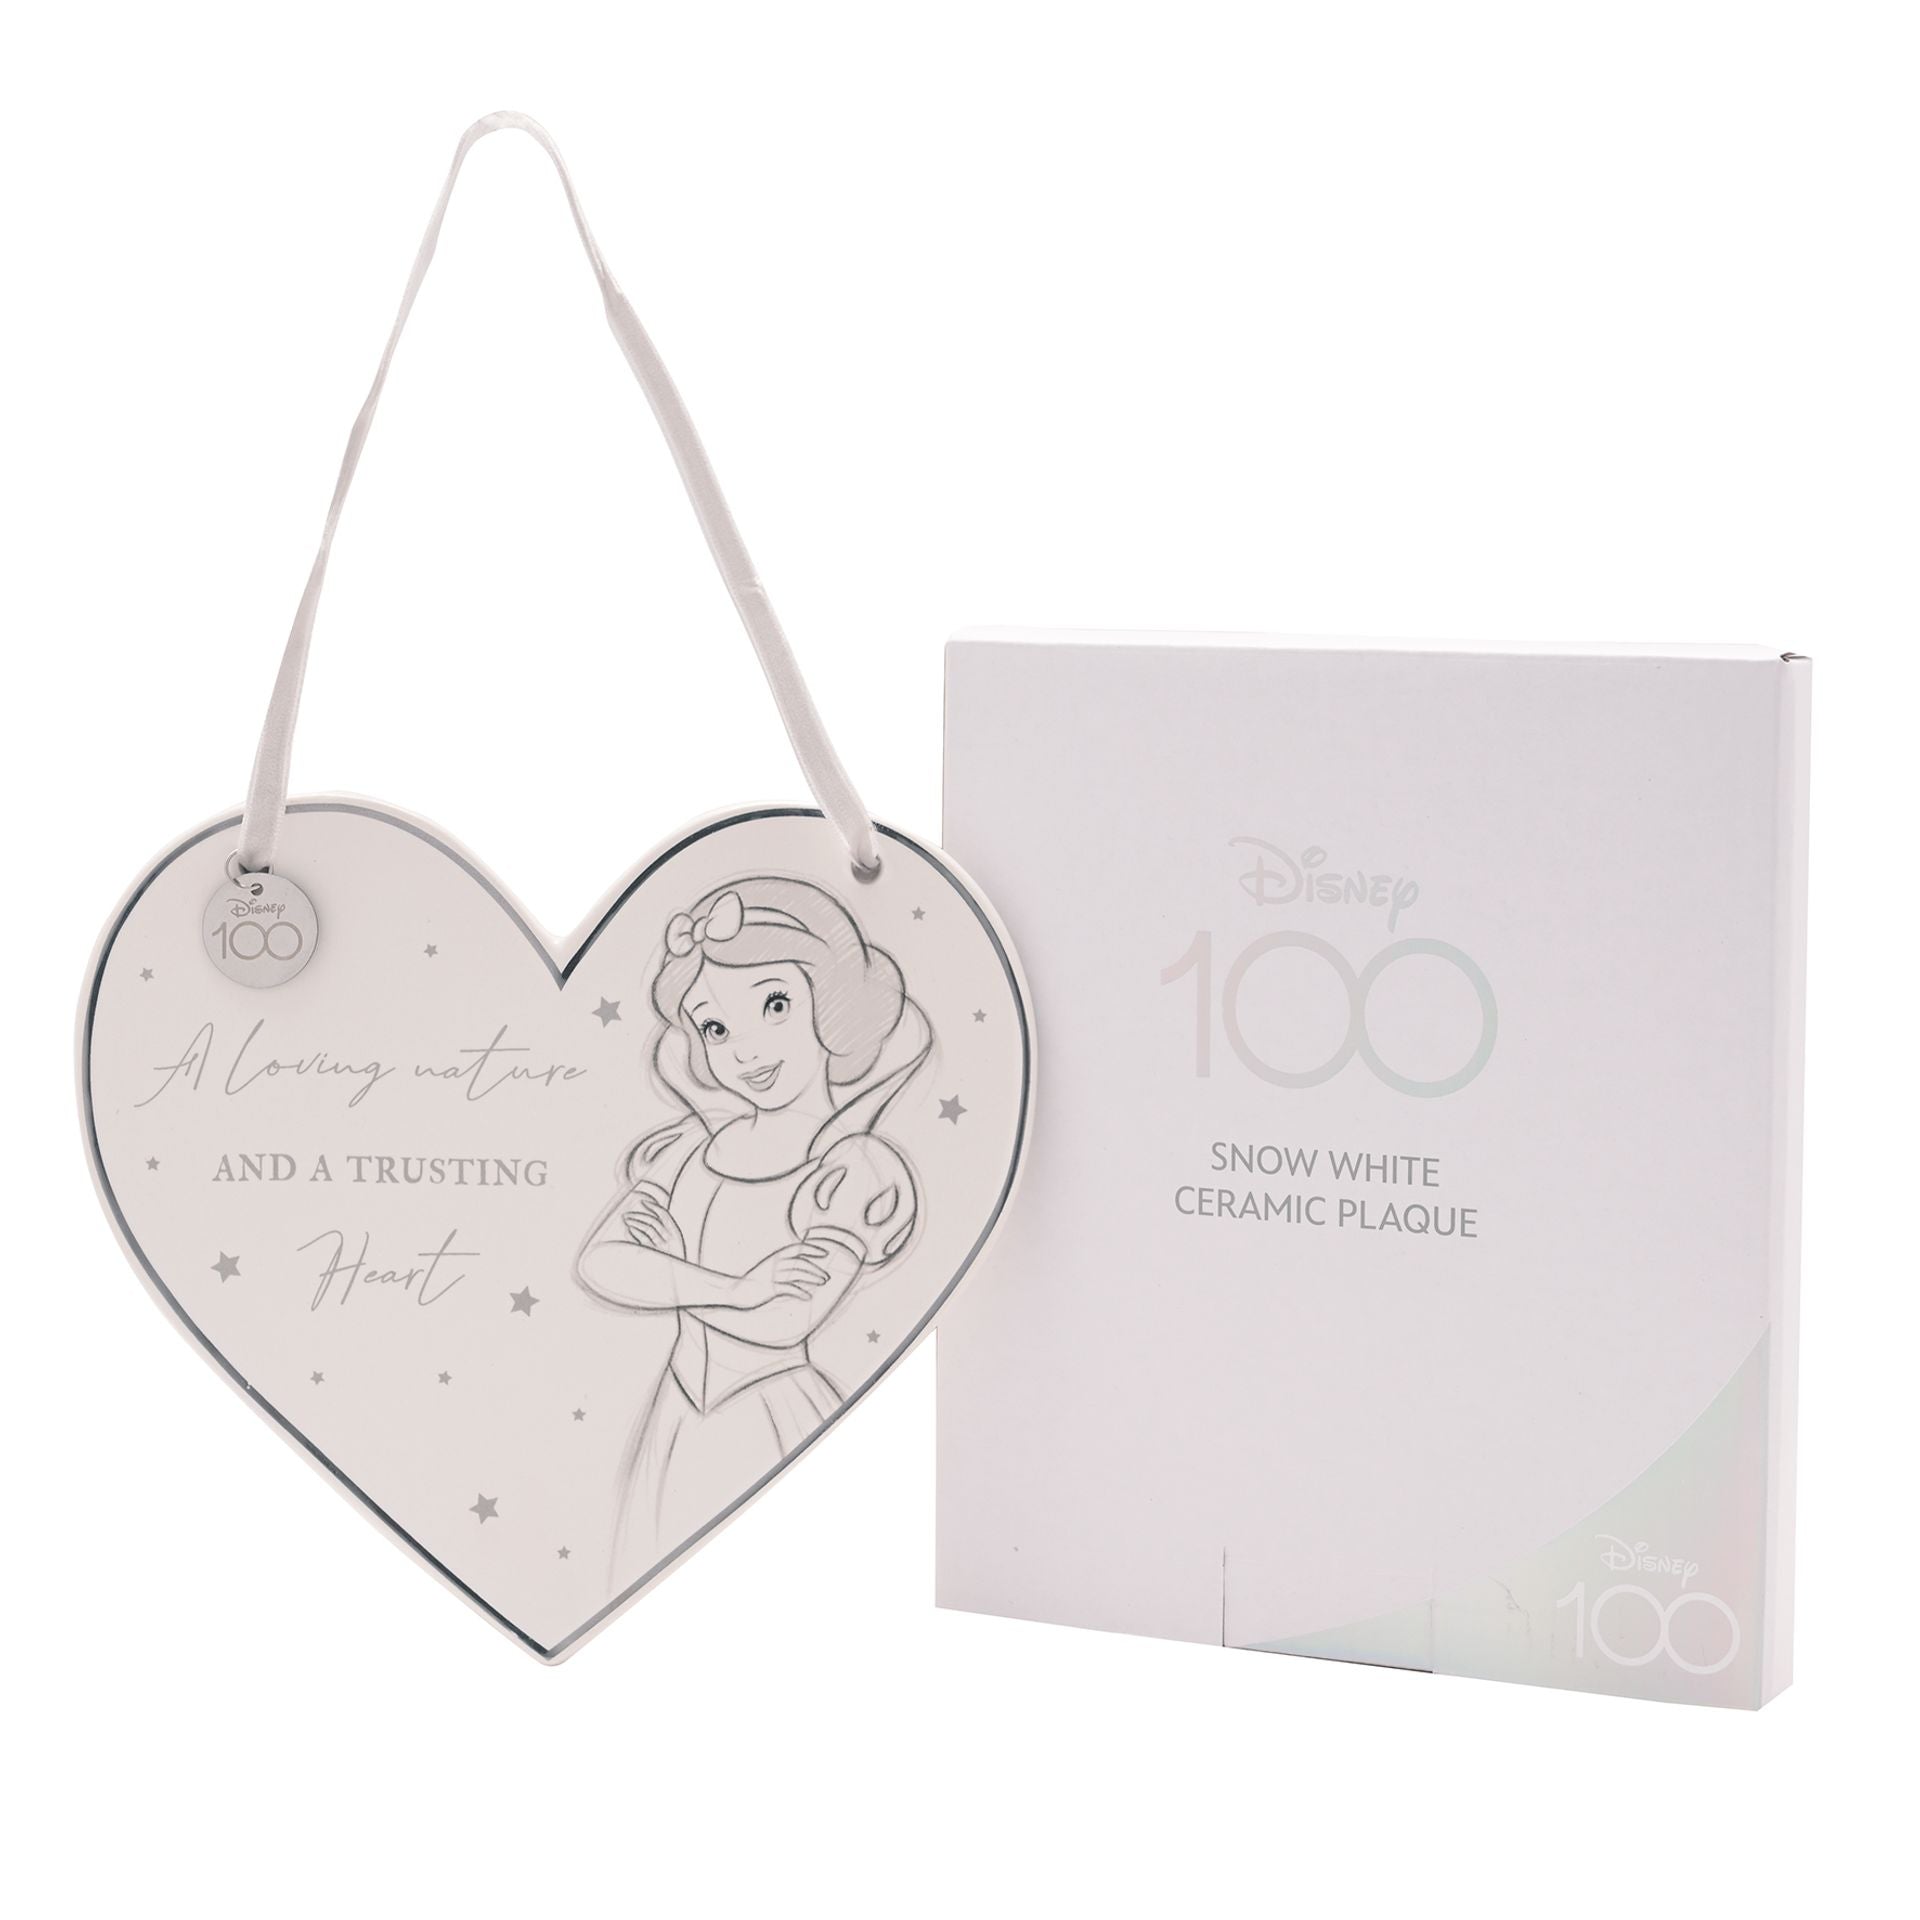 "Betoverende Sneeuwwitje keramische plaquette van Disney 100 - Met inspirerende illustratie van Sneeuwwitje en de titel 'A Loving Nature and a Trusting Heart'. Een must-have voor Disney-liefhebbers van alle leeftijden! Verpakt in een prachtige geschenkverpakking."